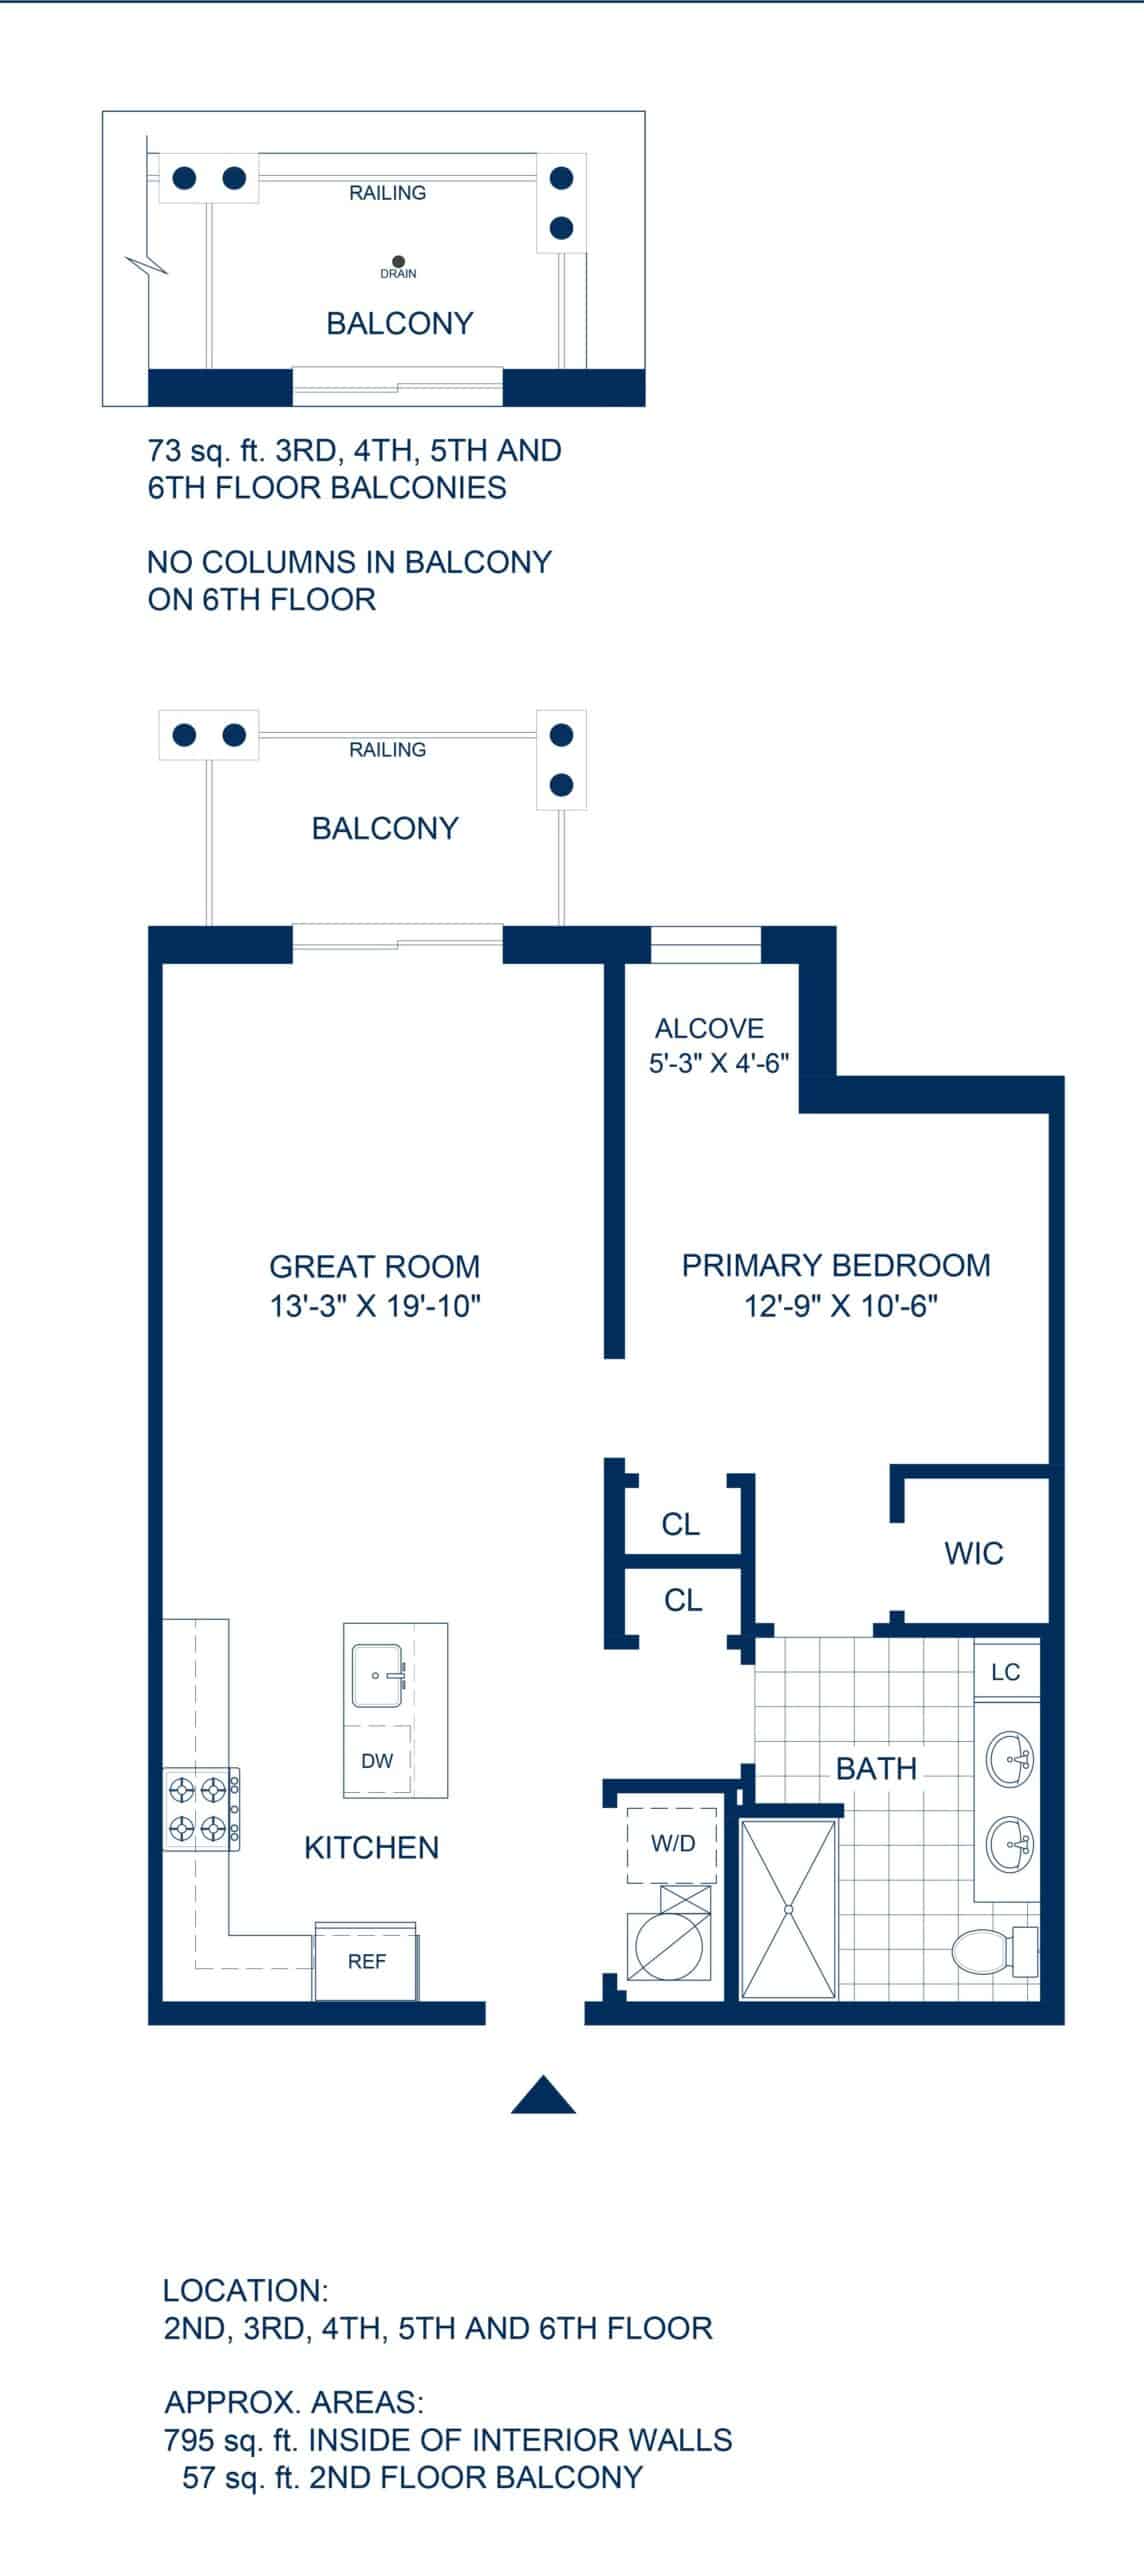 Adelphi Residences Floor Plan - 1 Bedroom - View 1